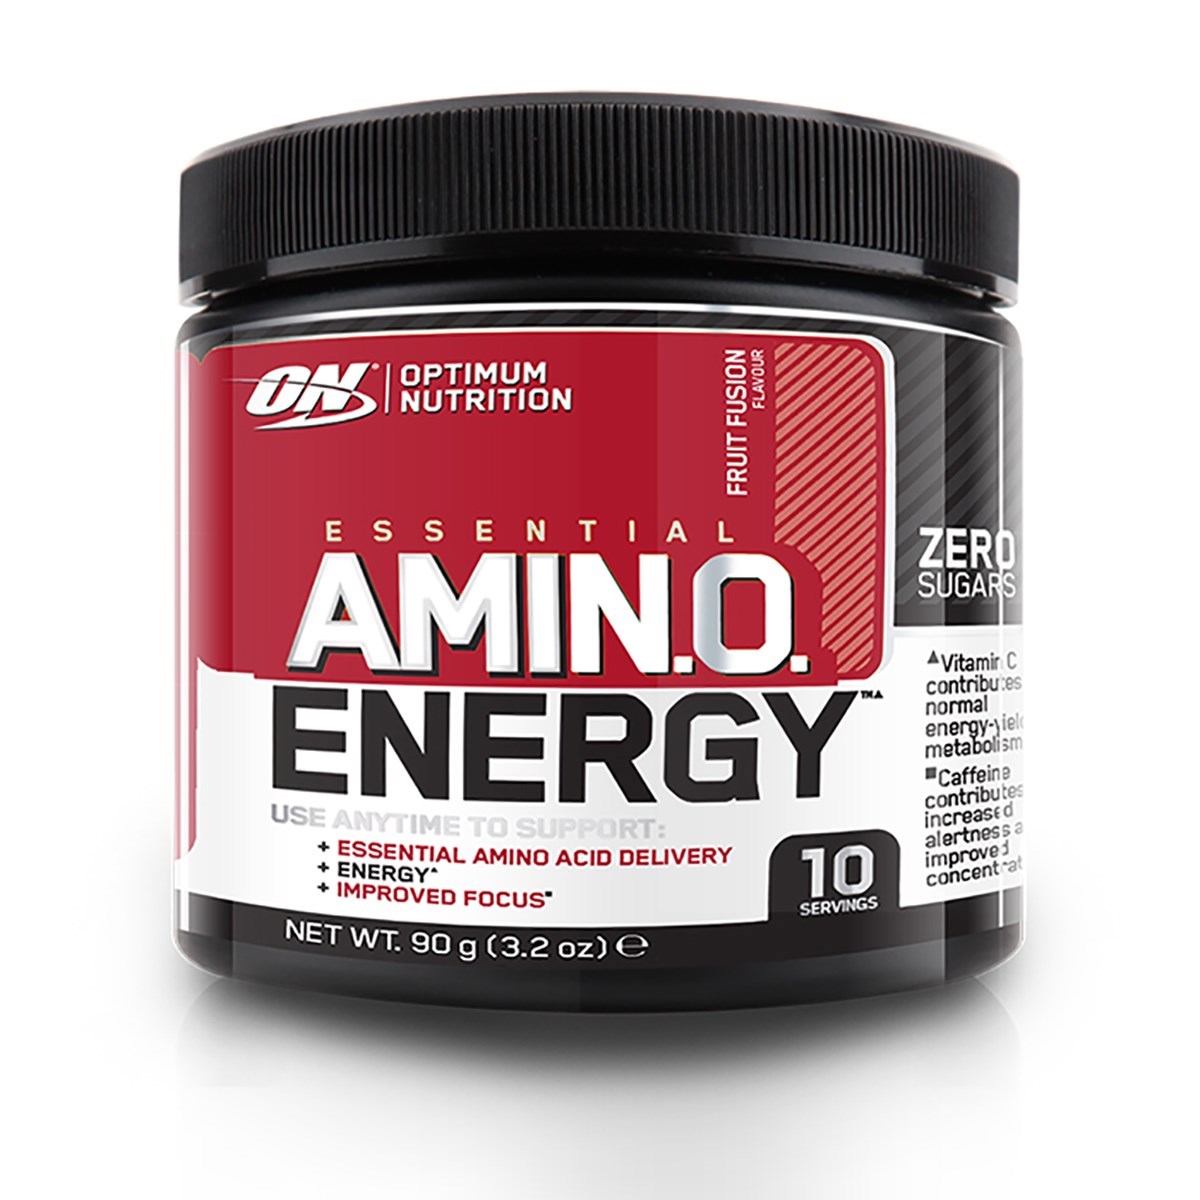 Аминокислоты nutrition. Аминокислоты Optimum Nutrition. Аминокислоты on Amino Energy. Аргинин Optimum Nutrition. Optimum Nutrition Essential Amino Energy.